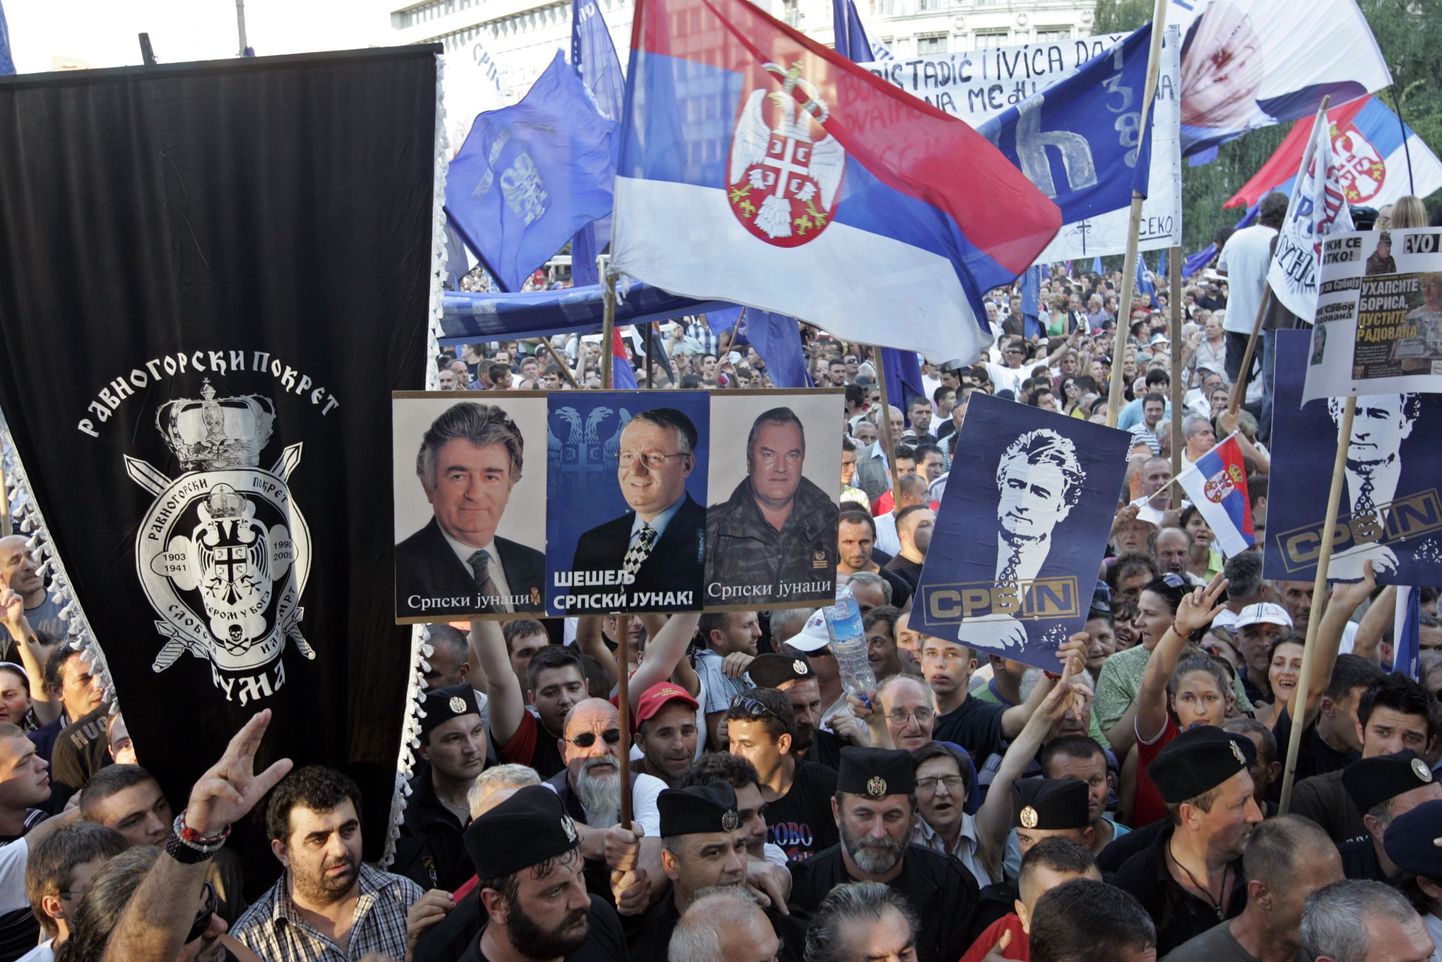 Rahvusäärmuslaste meeleavaldus Belgradis 29. juulil, kus väljendati toetust Radovan Karadzicile, Vojislav Seseljile ja Ratko Mladicile.